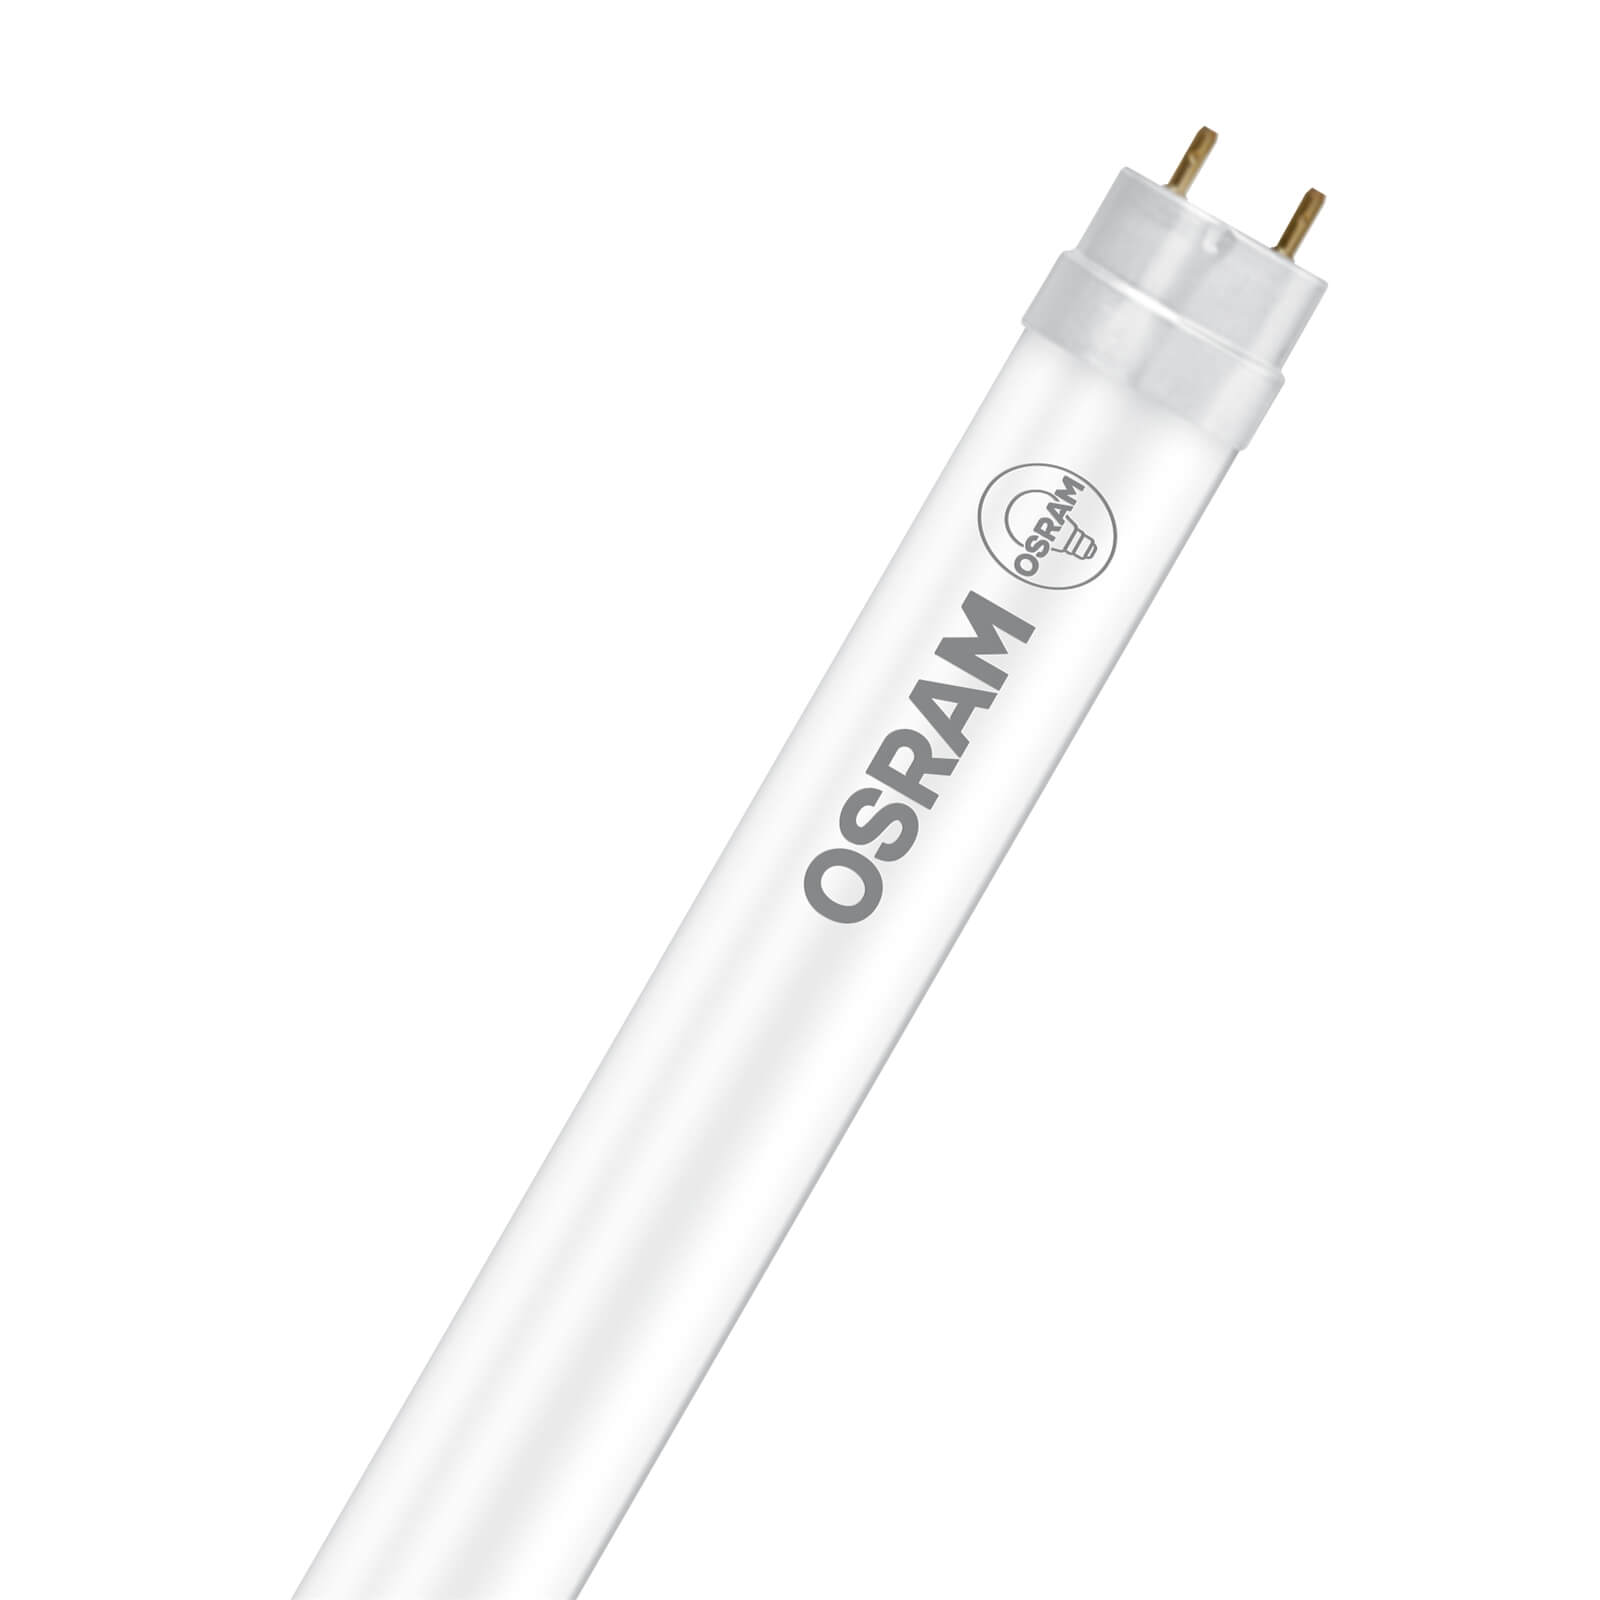 Osram LED Tube 1200mm 16.2W Warm White Light Bulb